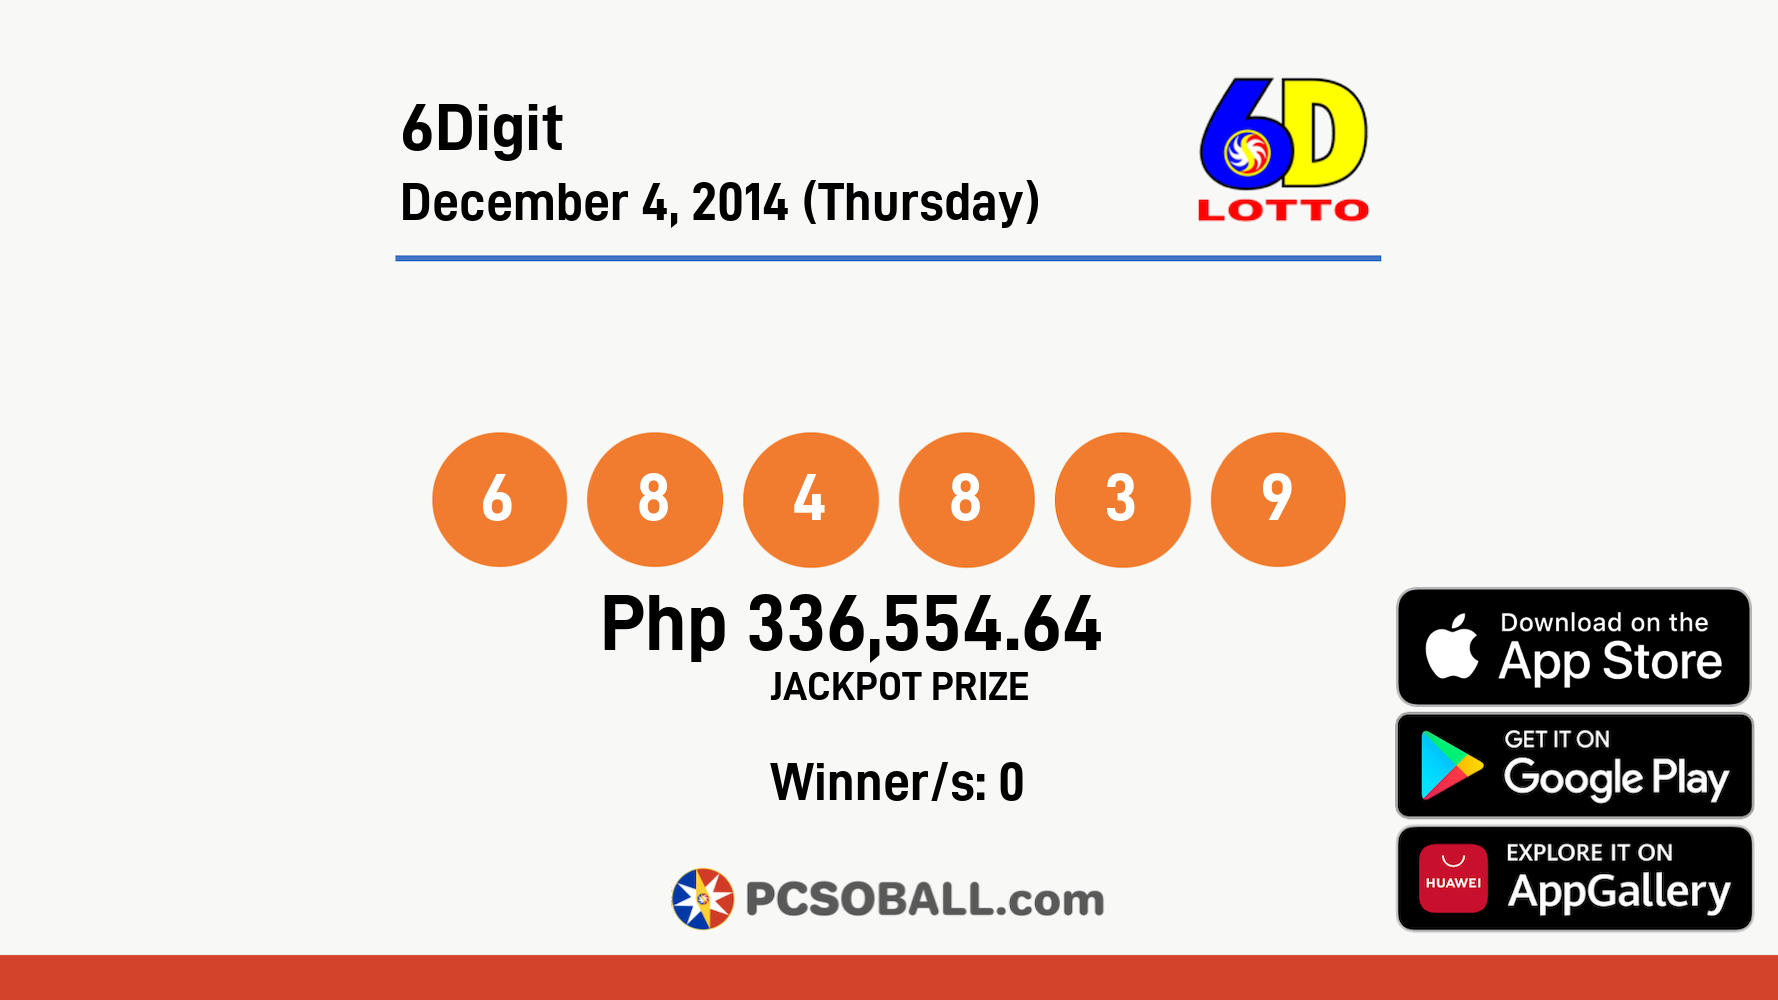 6Digit December 4, 2014 (Thursday) Result